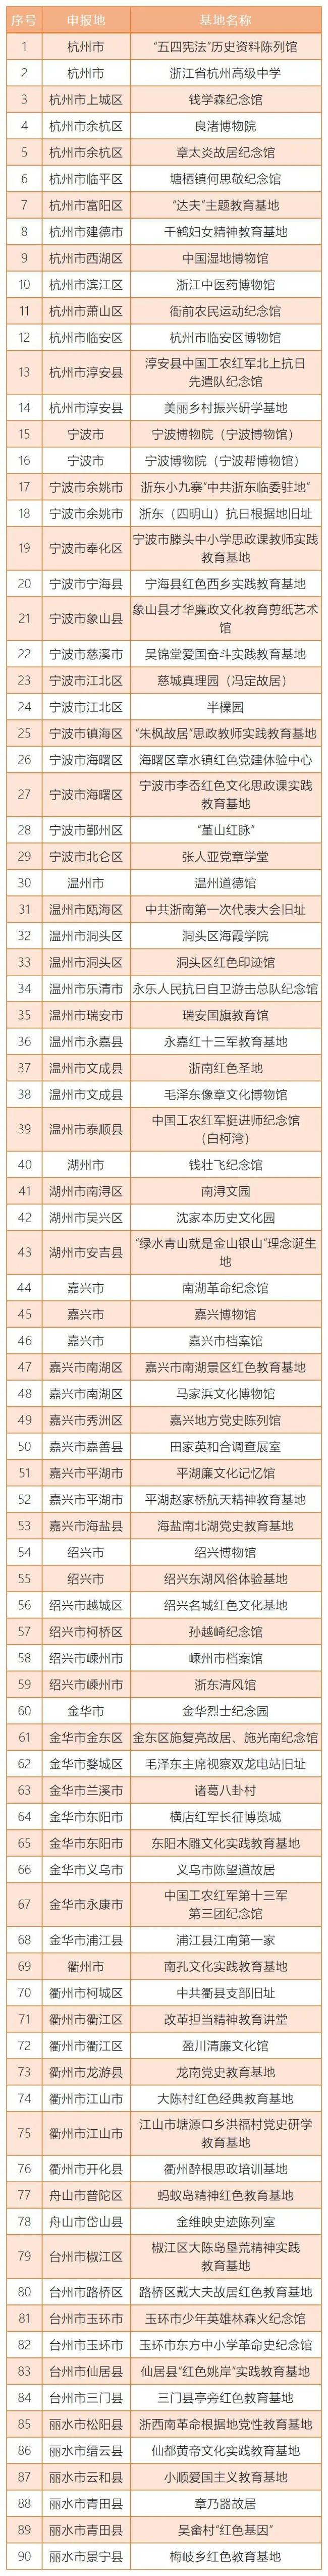 浙江省首批中小学思政课教师实践教育基地名单出炉